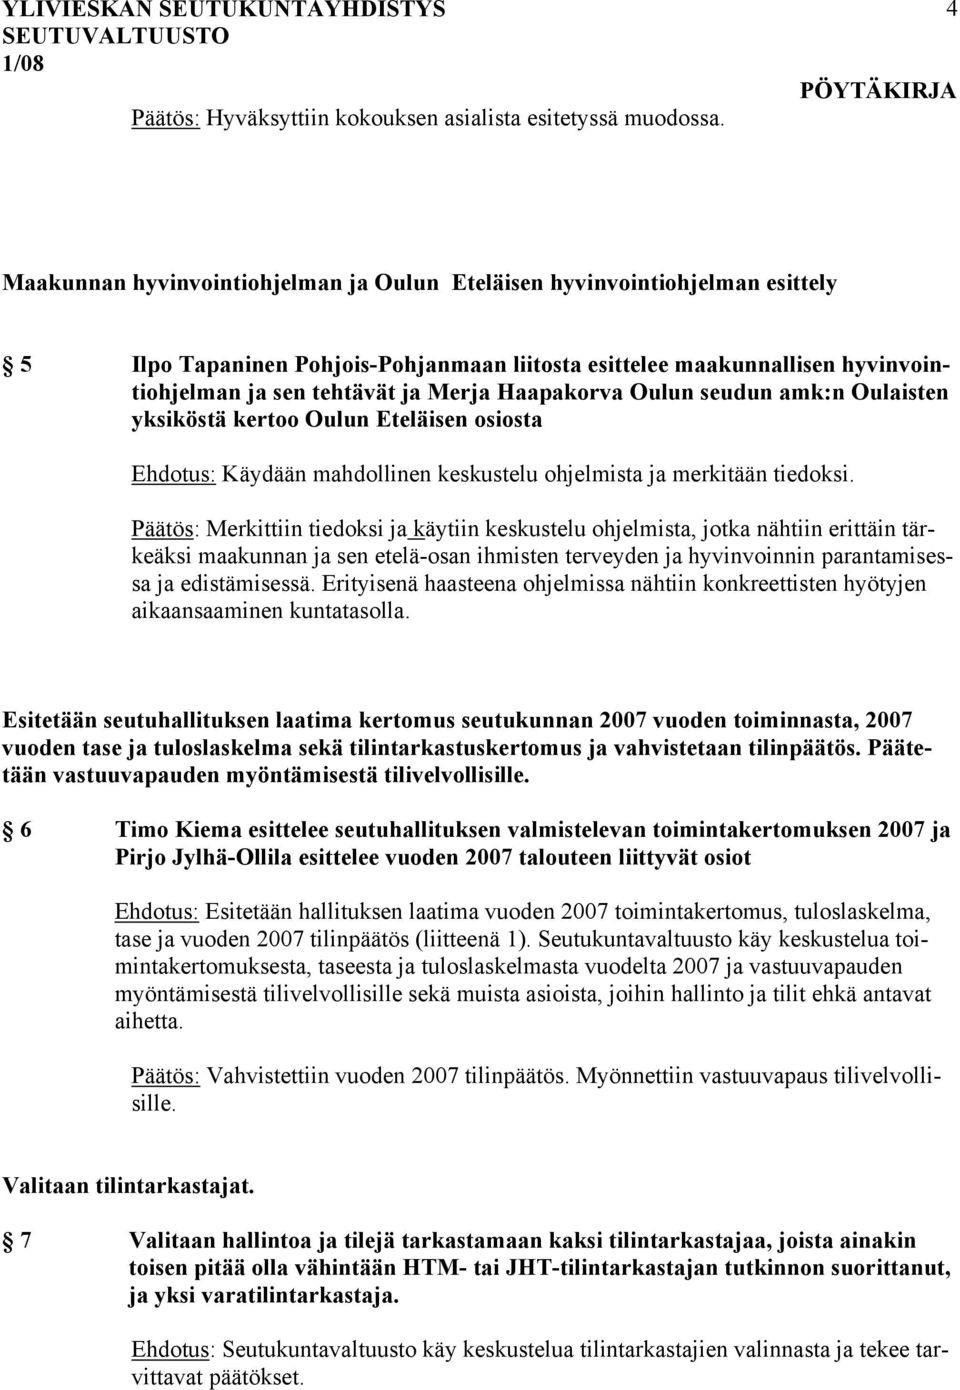 Haapakorva Oulun seudun amk:n Oulaisten yksiköstä kertoo Oulun Eteläisen osiosta Ehdotus: Käydään mahdollinen keskustelu ohjelmista ja merkitään tiedoksi.